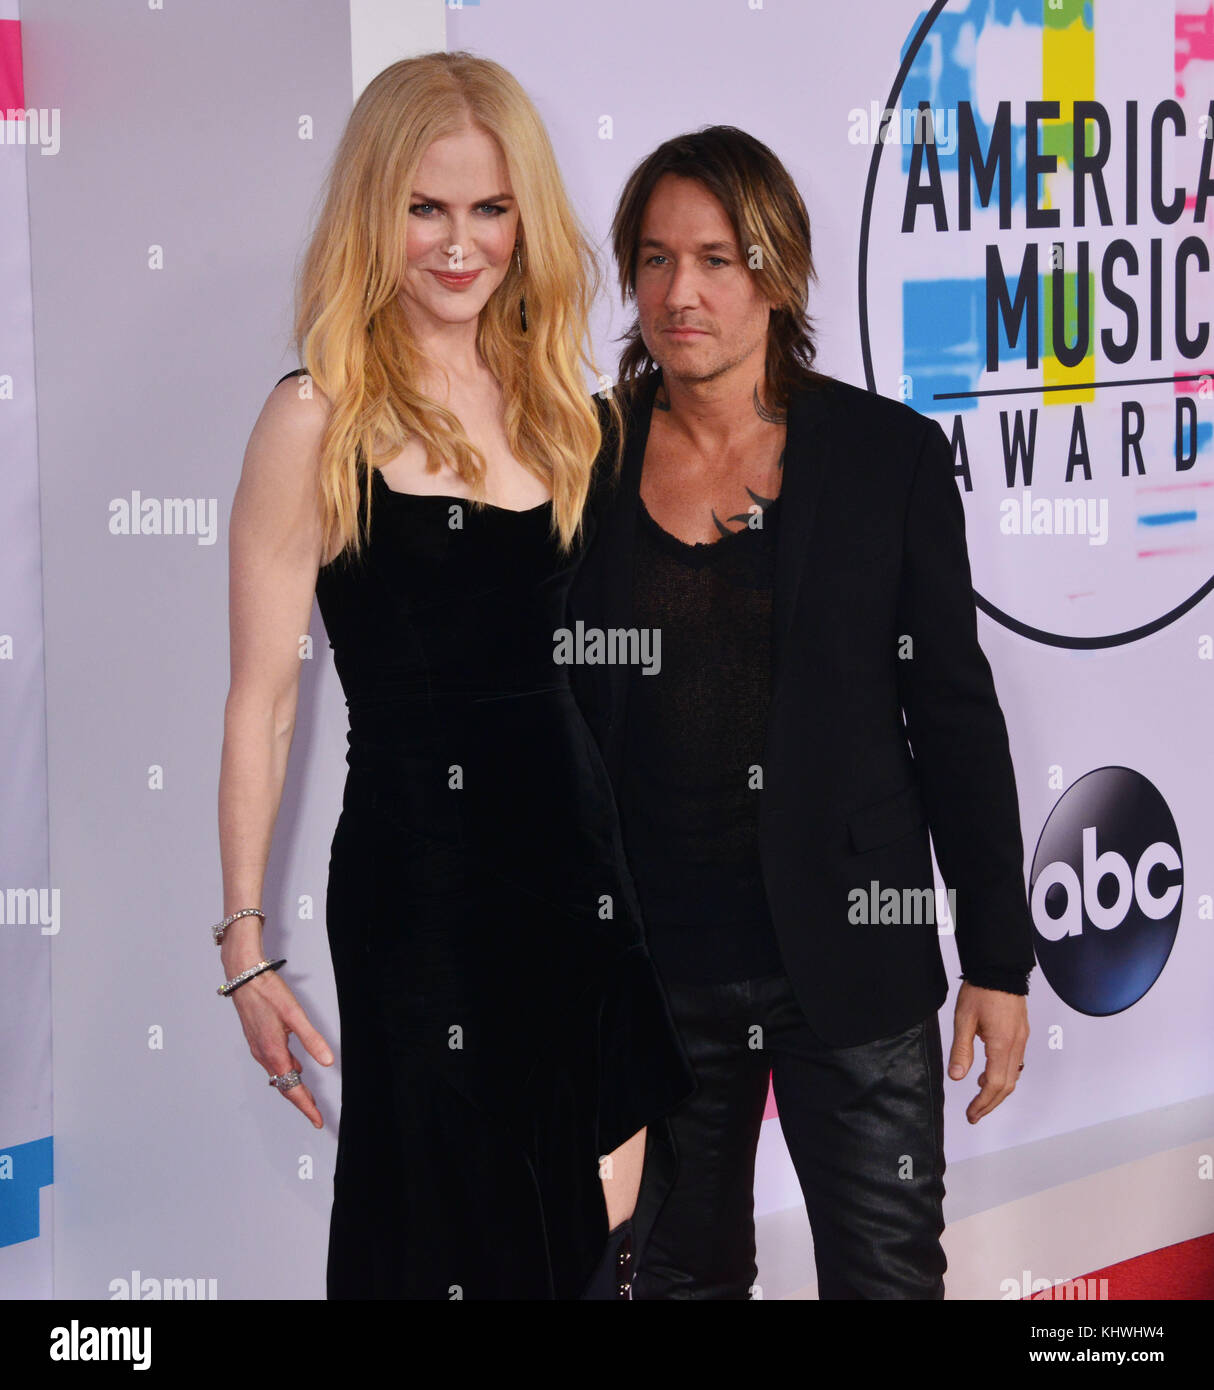 Los Angeles, USA. 19 Nov, 2017. Nicole Kidman und Keith Urban 137 an die 2017 American Music Awards bei Microsoft Theater kommt am 19. November 2017 in Los Angeles, Kalifornien Quelle: tsuni/usa/alamy leben Nachrichten Stockfoto